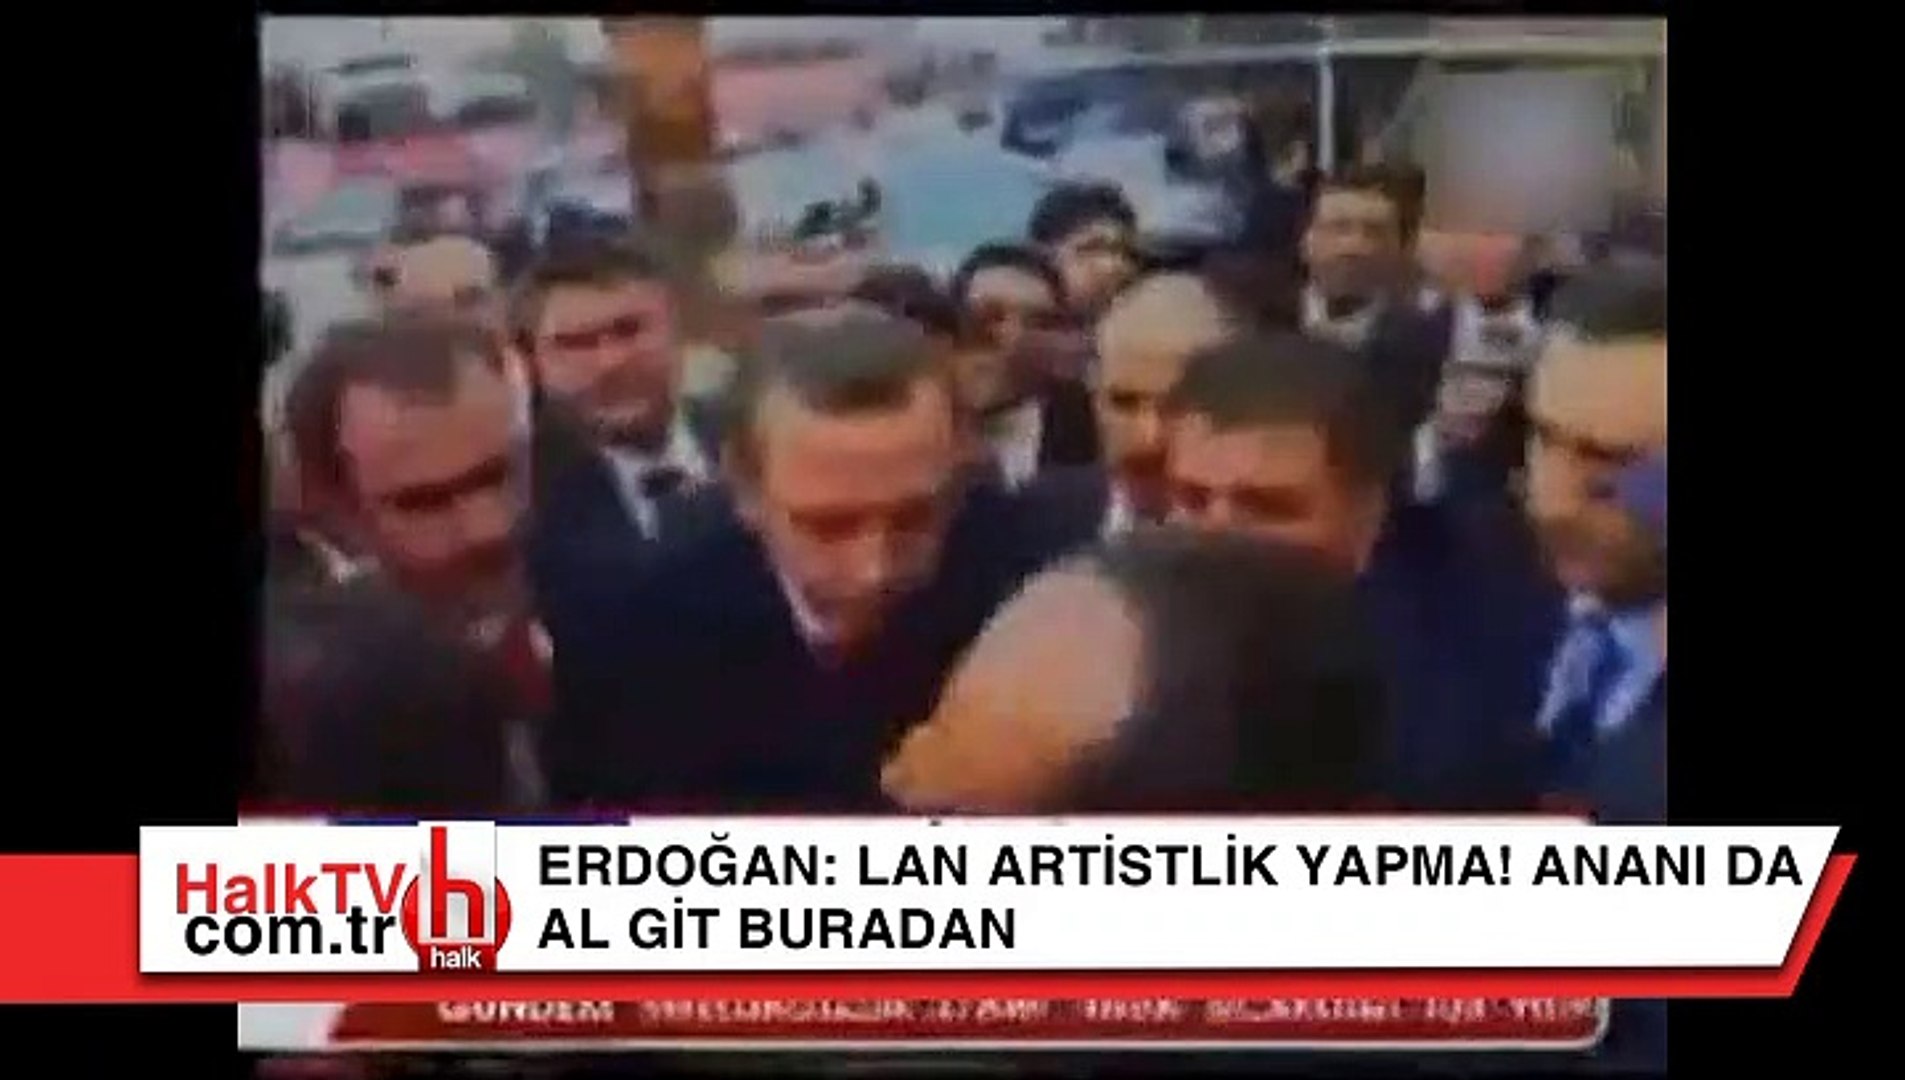 Erdoğan: Ananı da al git buradan - Dailymotion Video